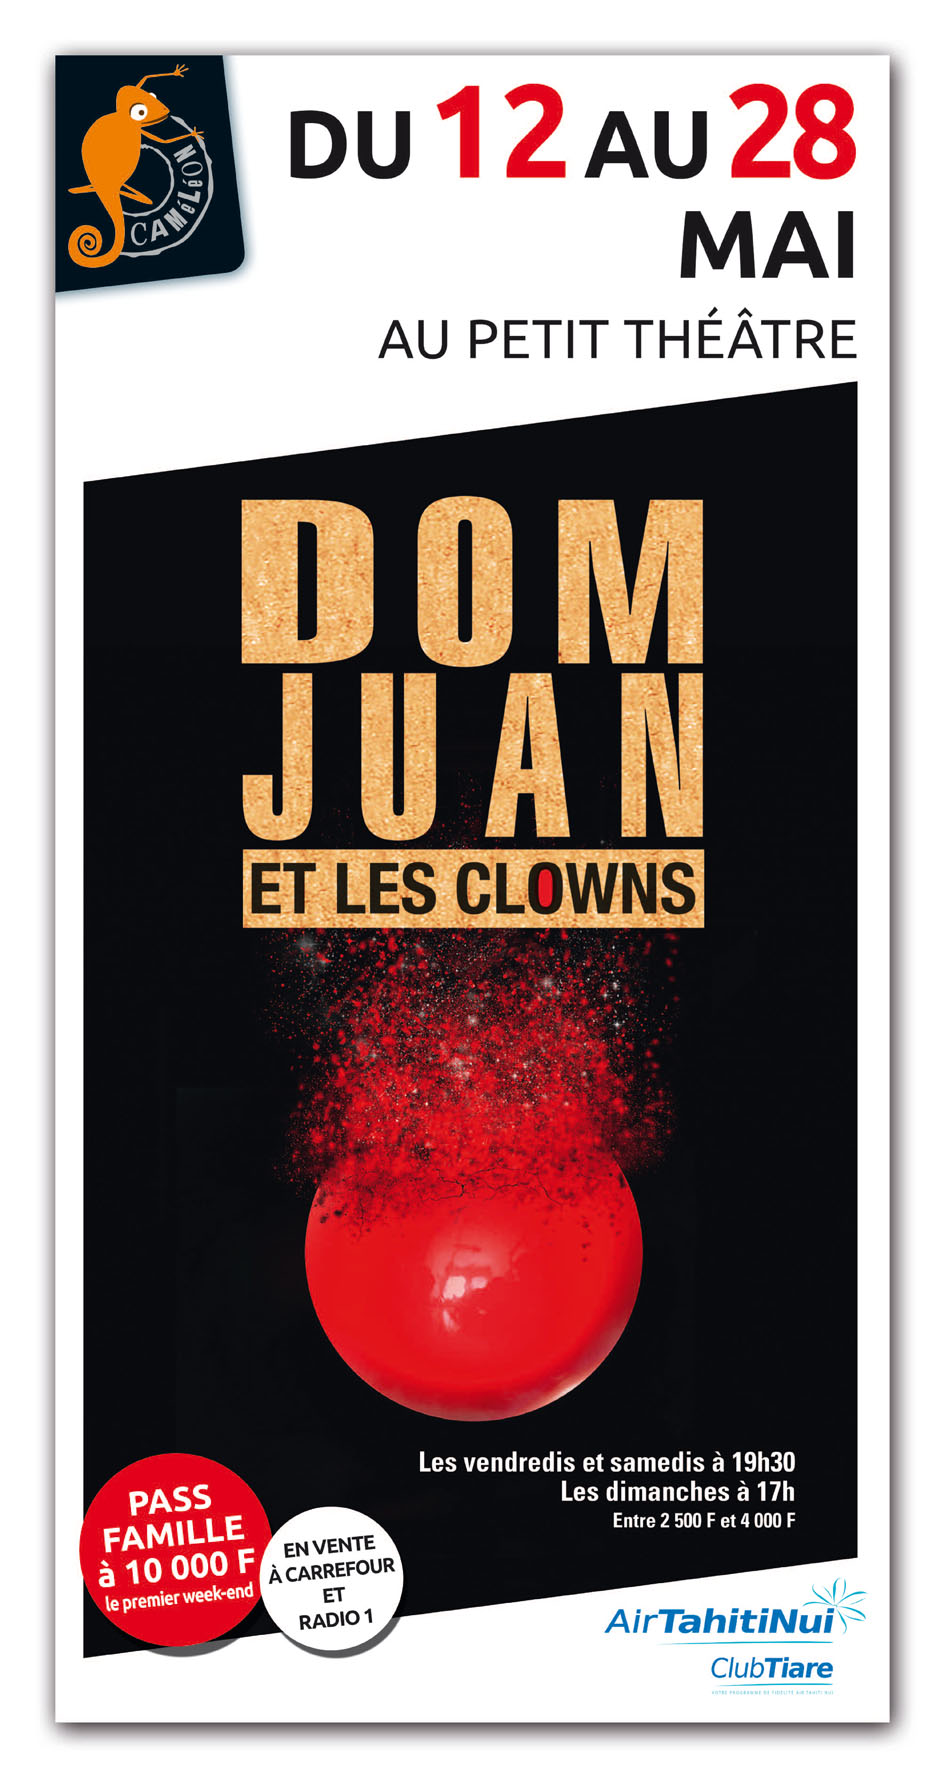 Le Dom Juan de Molière monte sur scène avec des clowns